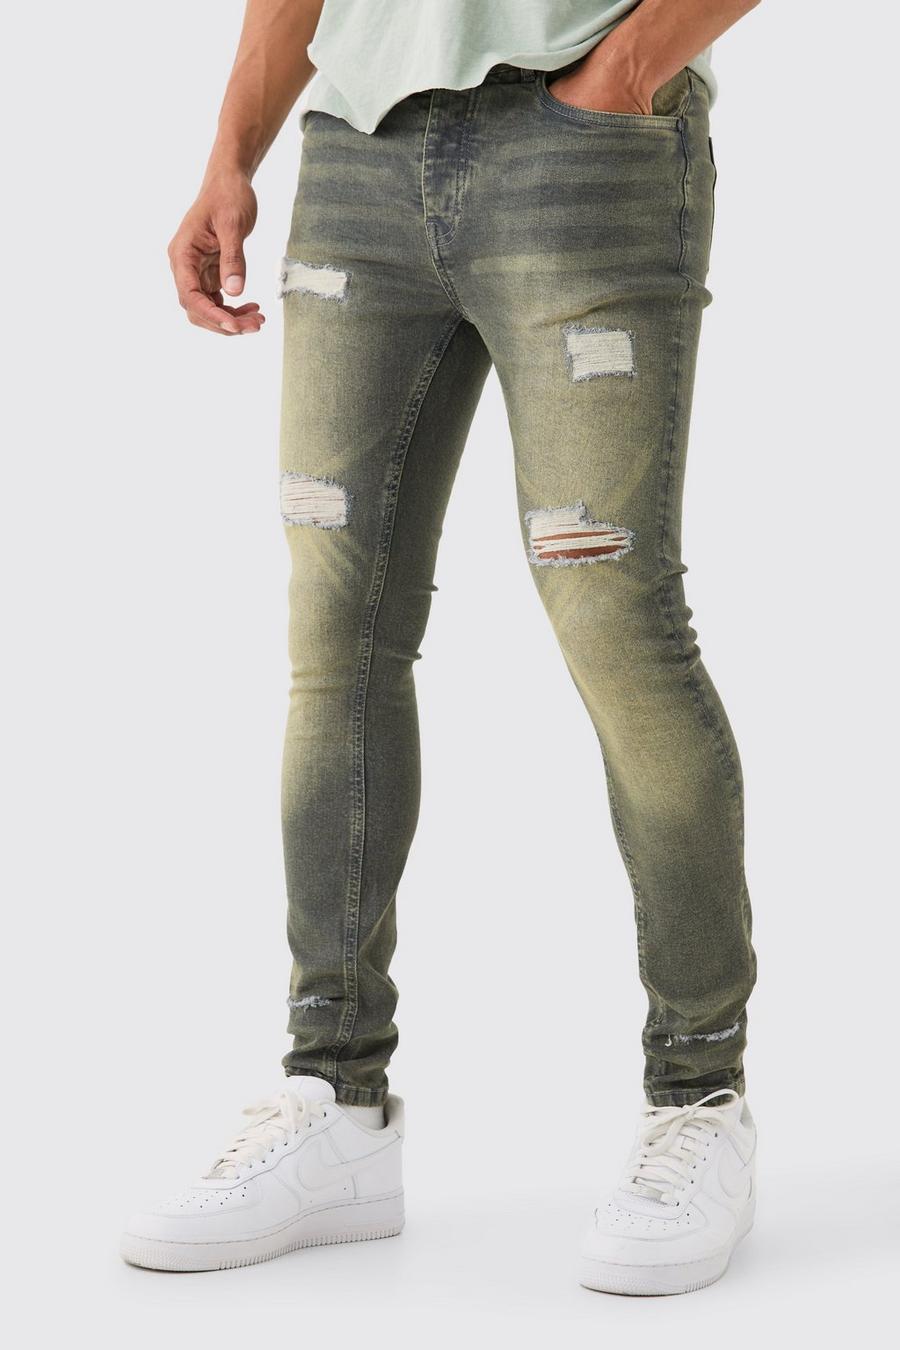 Zerrissene Super Skinny Stretch Jeans in Antik-Grau, Grey